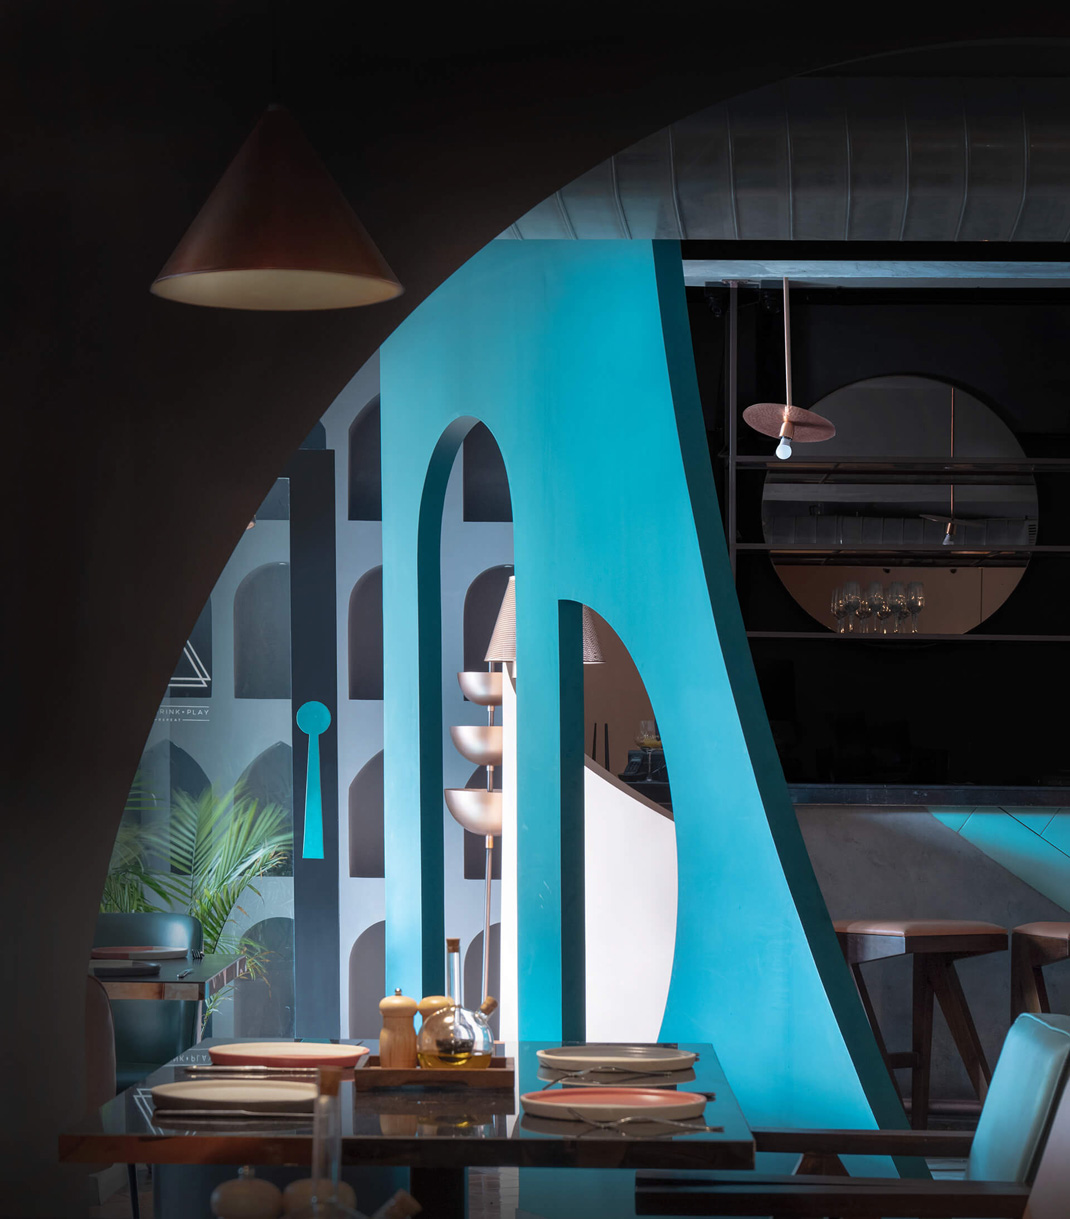 几何化图形元素咖啡馆 印度 咖啡店 几何 画廊 配色 logo设计 vi设计 空间设计